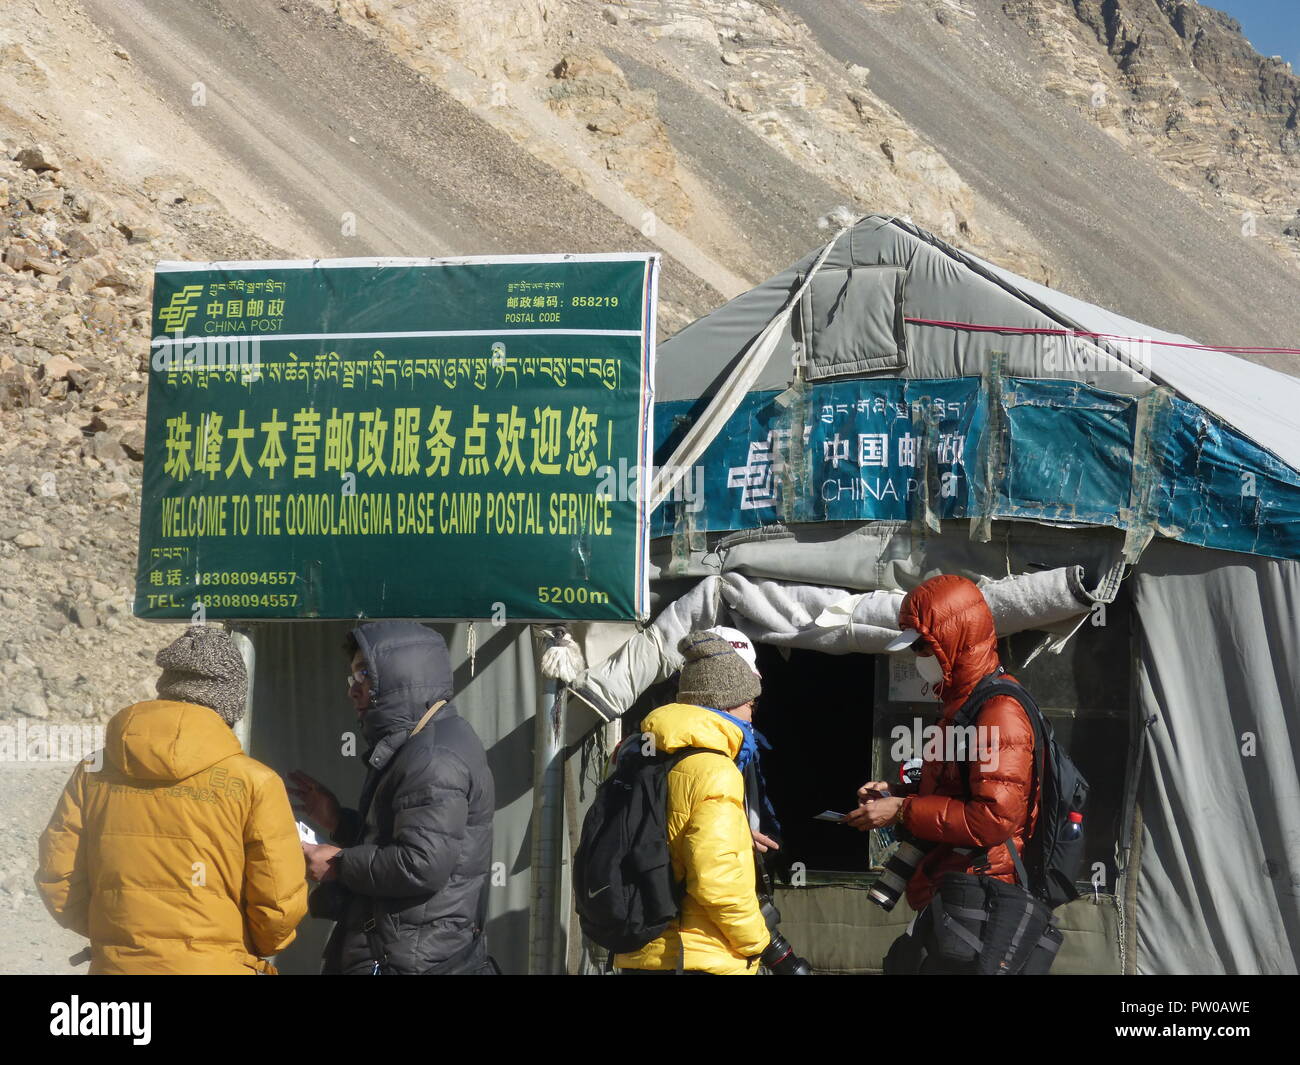 Bureau de poste au camp de base de l'Everest aussi connu comme Oomolangma,  pour les touristes et les alpinistes pour envoyer des cartes postales et  des courriels aux membres de la famille